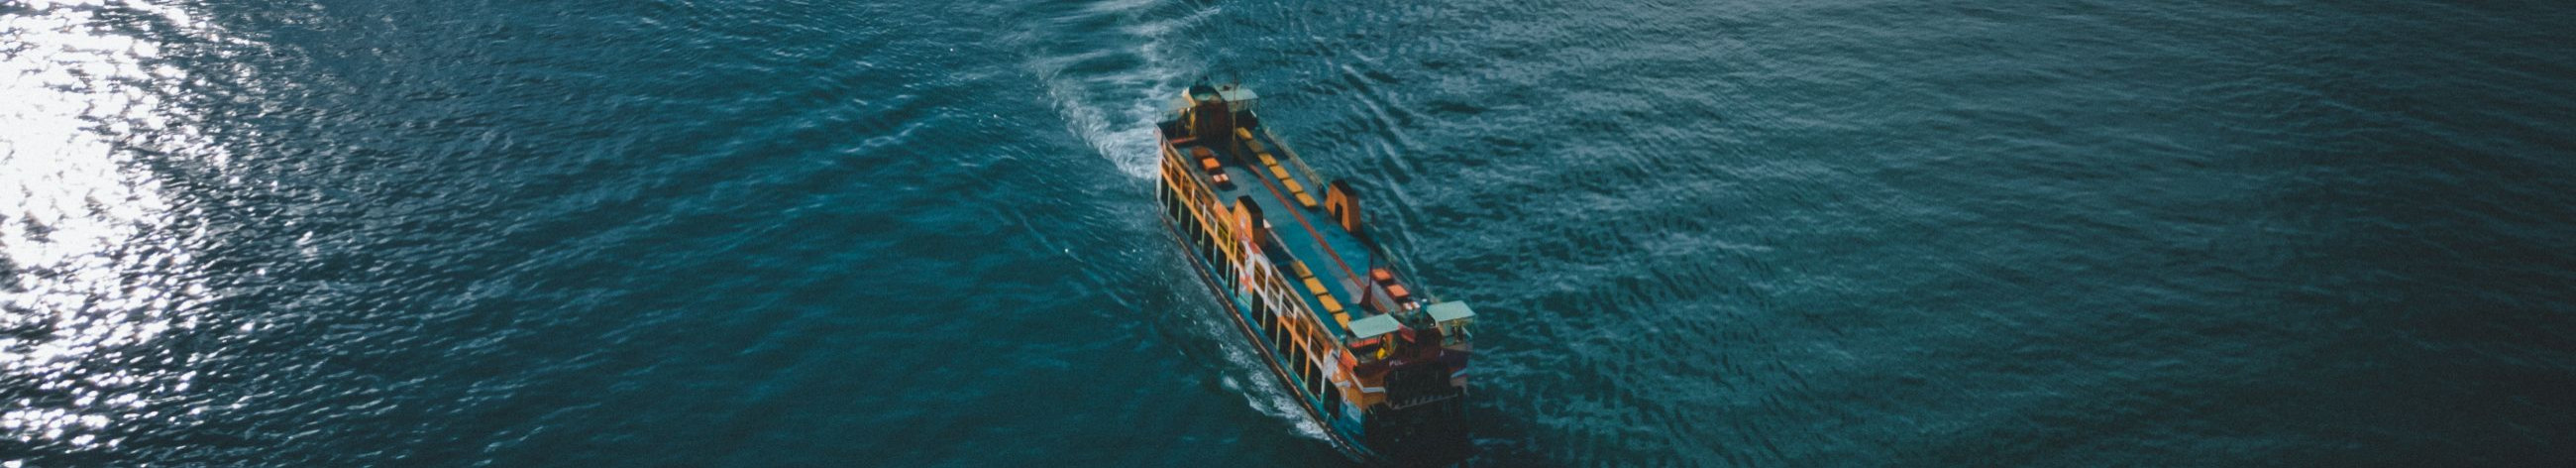 Pakume merendusvarustuse ja -teenuste lahendusi, sealhulgas paigaldus-, hooldus- ja teenindusteenuseid, mis tagavad laevade ohutuse ja tõhususe.